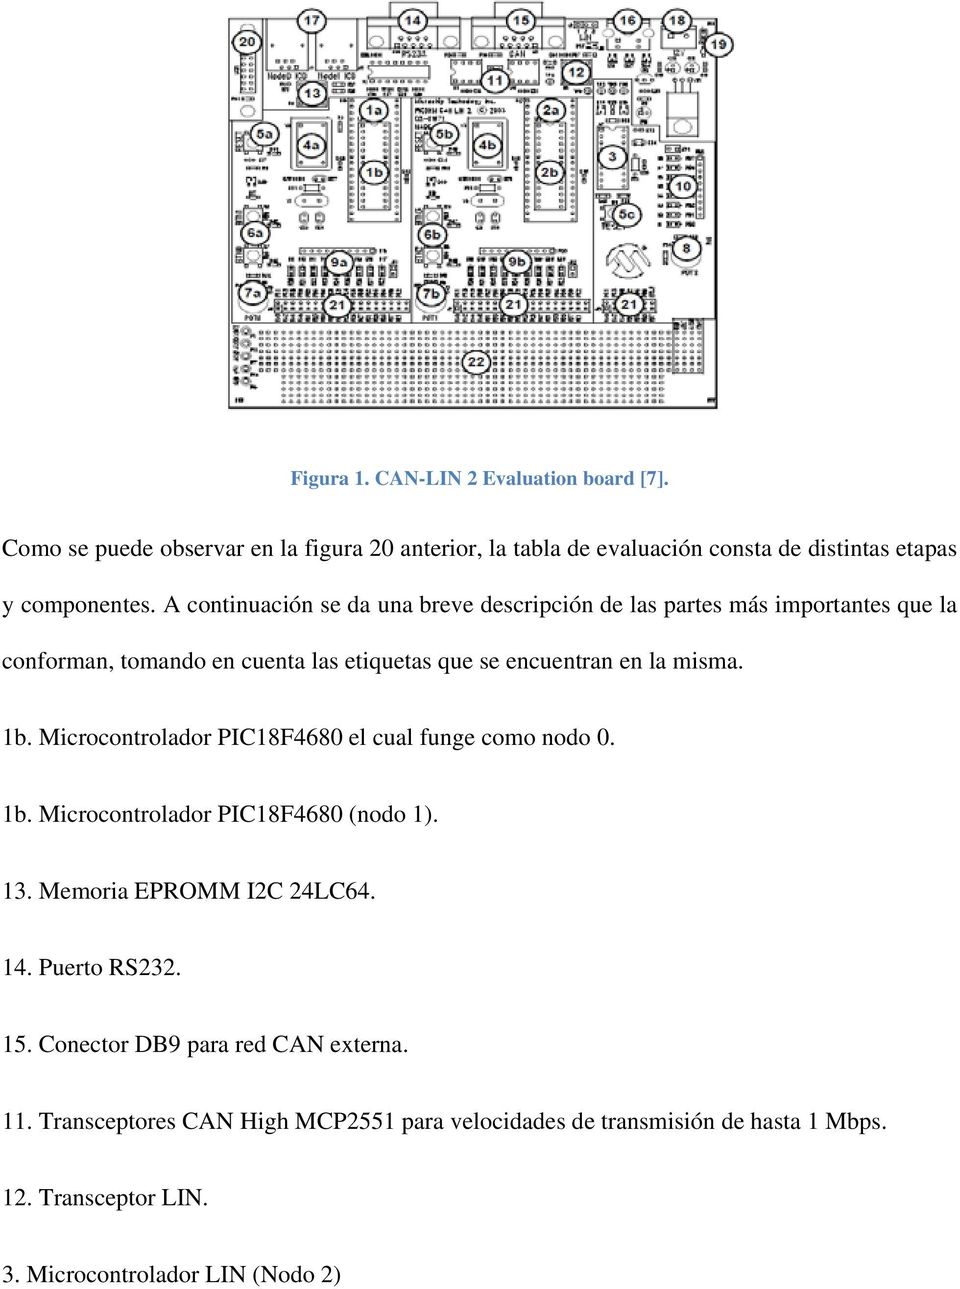 Microcontrolador PIC18F4680 el cual funge como nodo 0. 1b. Microcontrolador PIC18F4680 (nodo 1). 13. Memoria EPROMM I2C 24LC64. 14. Puerto RS232. 15.